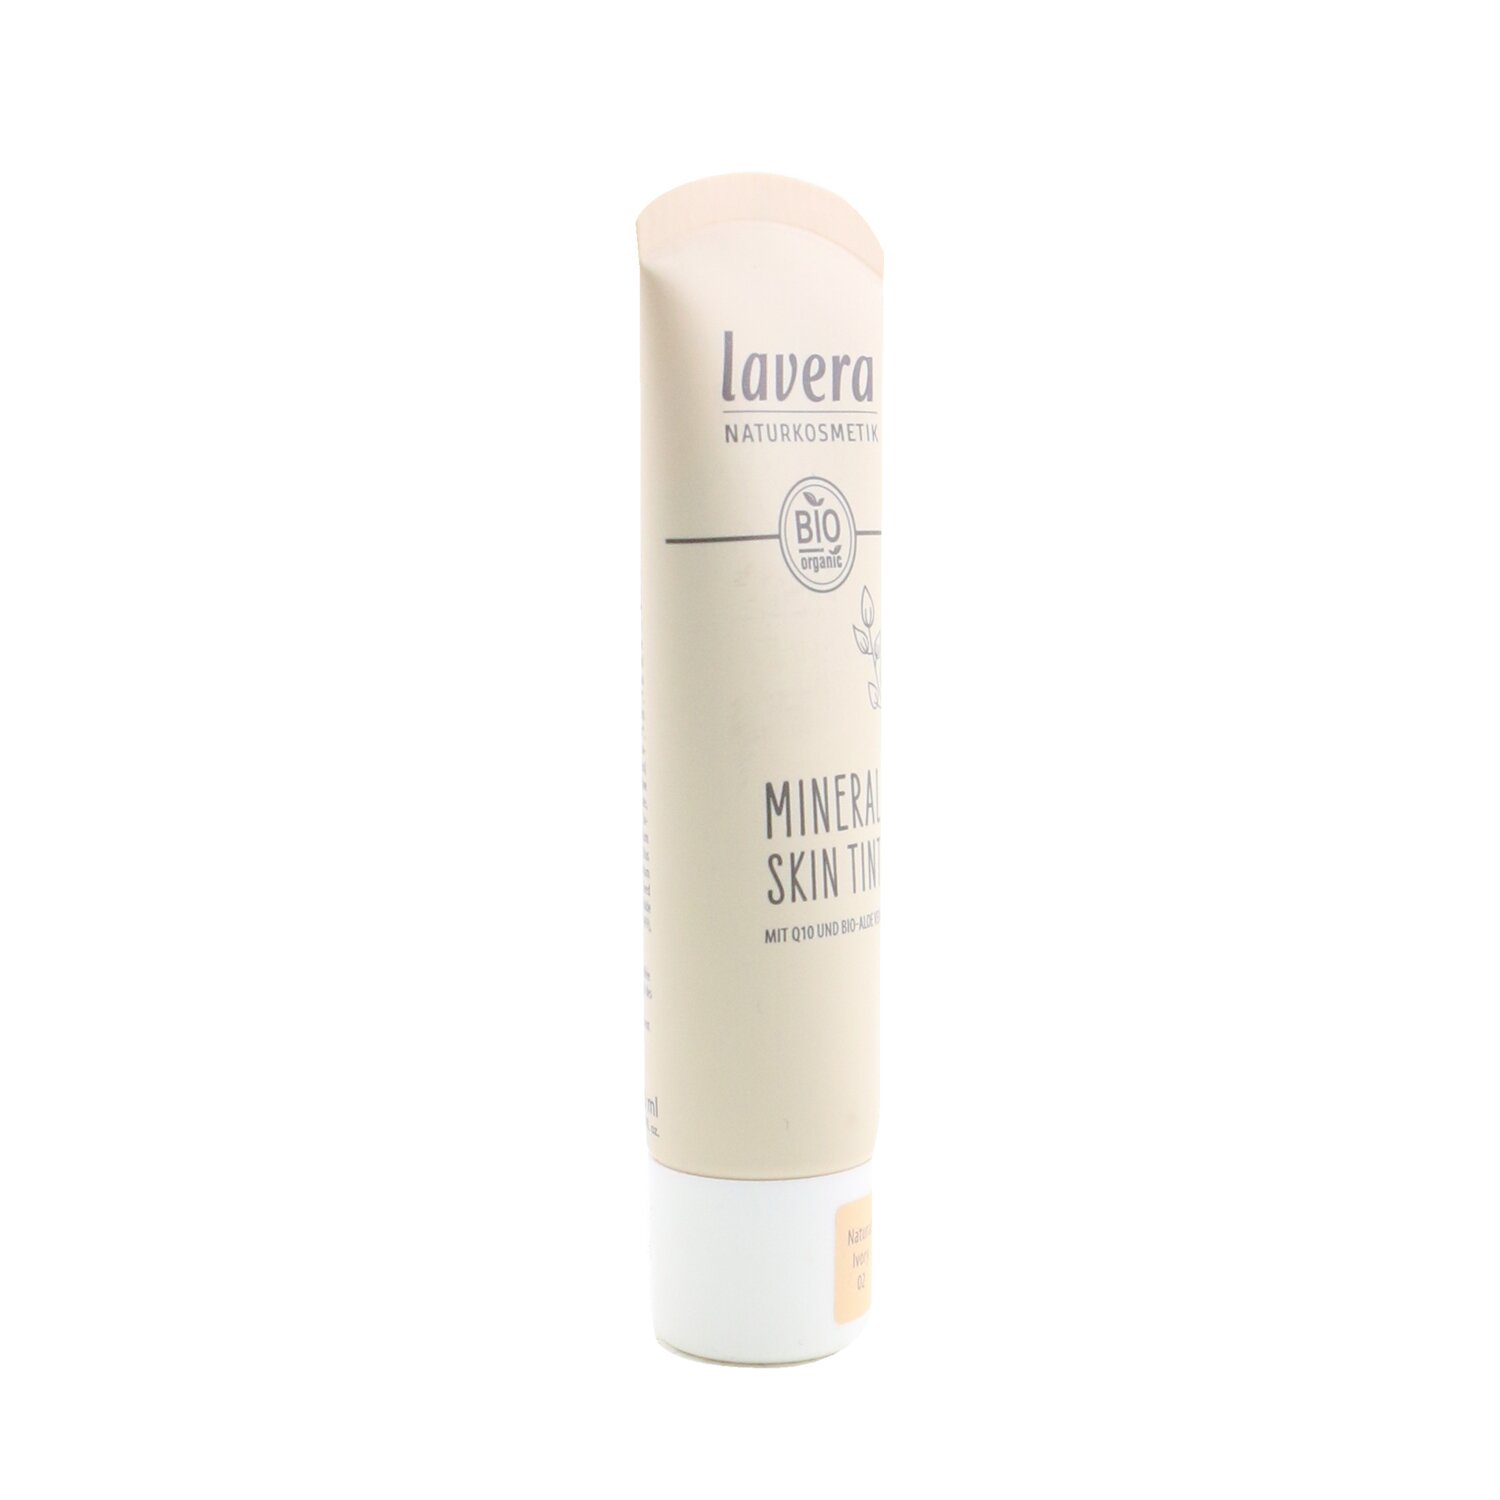 Lavera Mineral Skin Tint 30ml/1oz